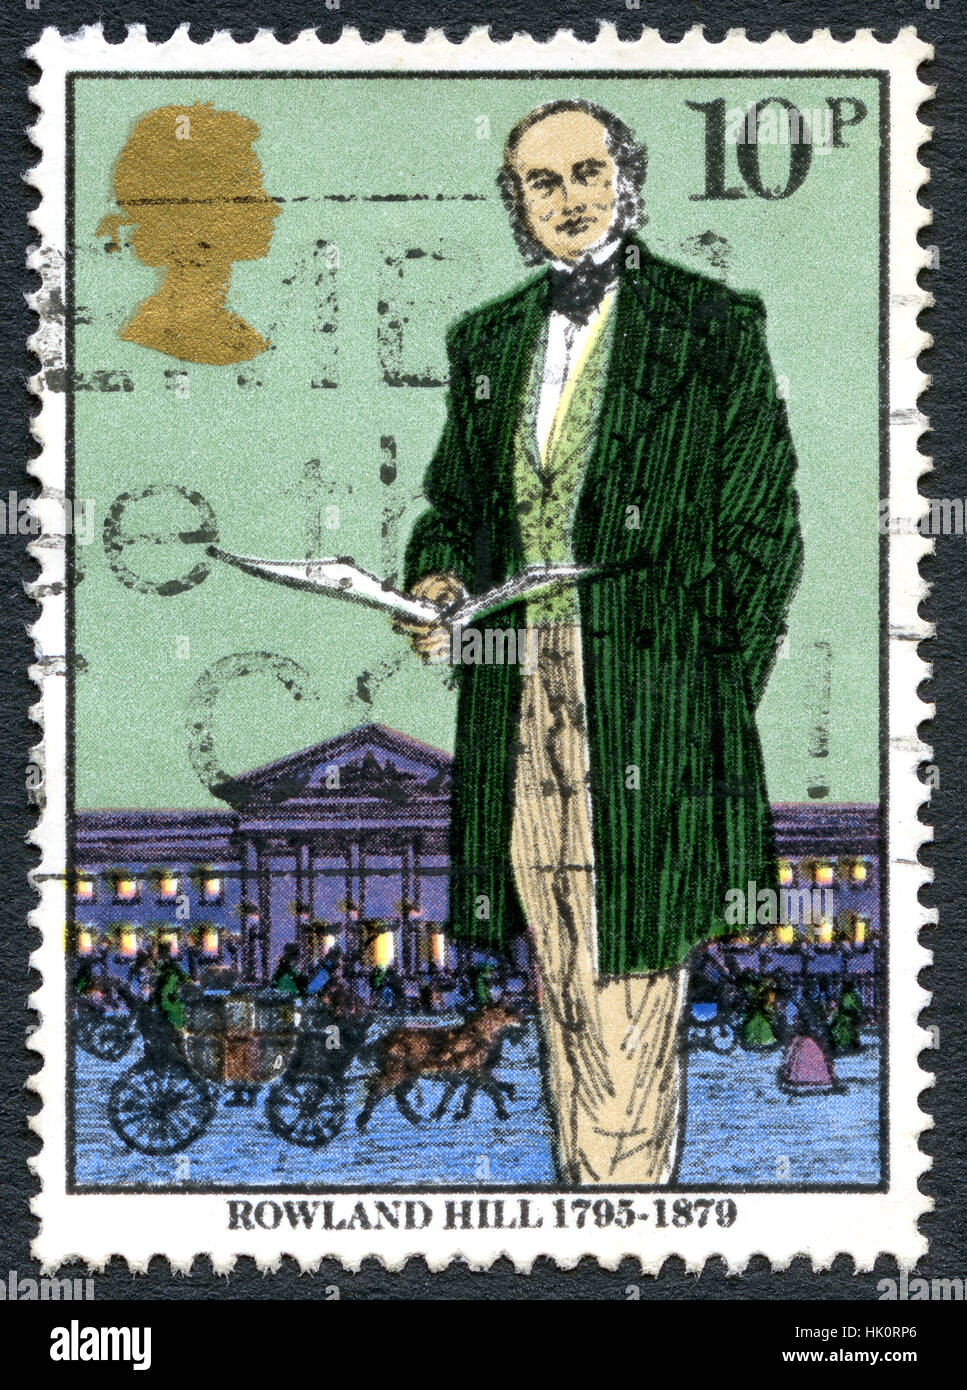 Gran Bretaña: circa 1979: Un sello utilizado en el Reino Unido, mostrando una ilustración del inventor y reformador social Rowland Hill, circa 1979. Foto de stock